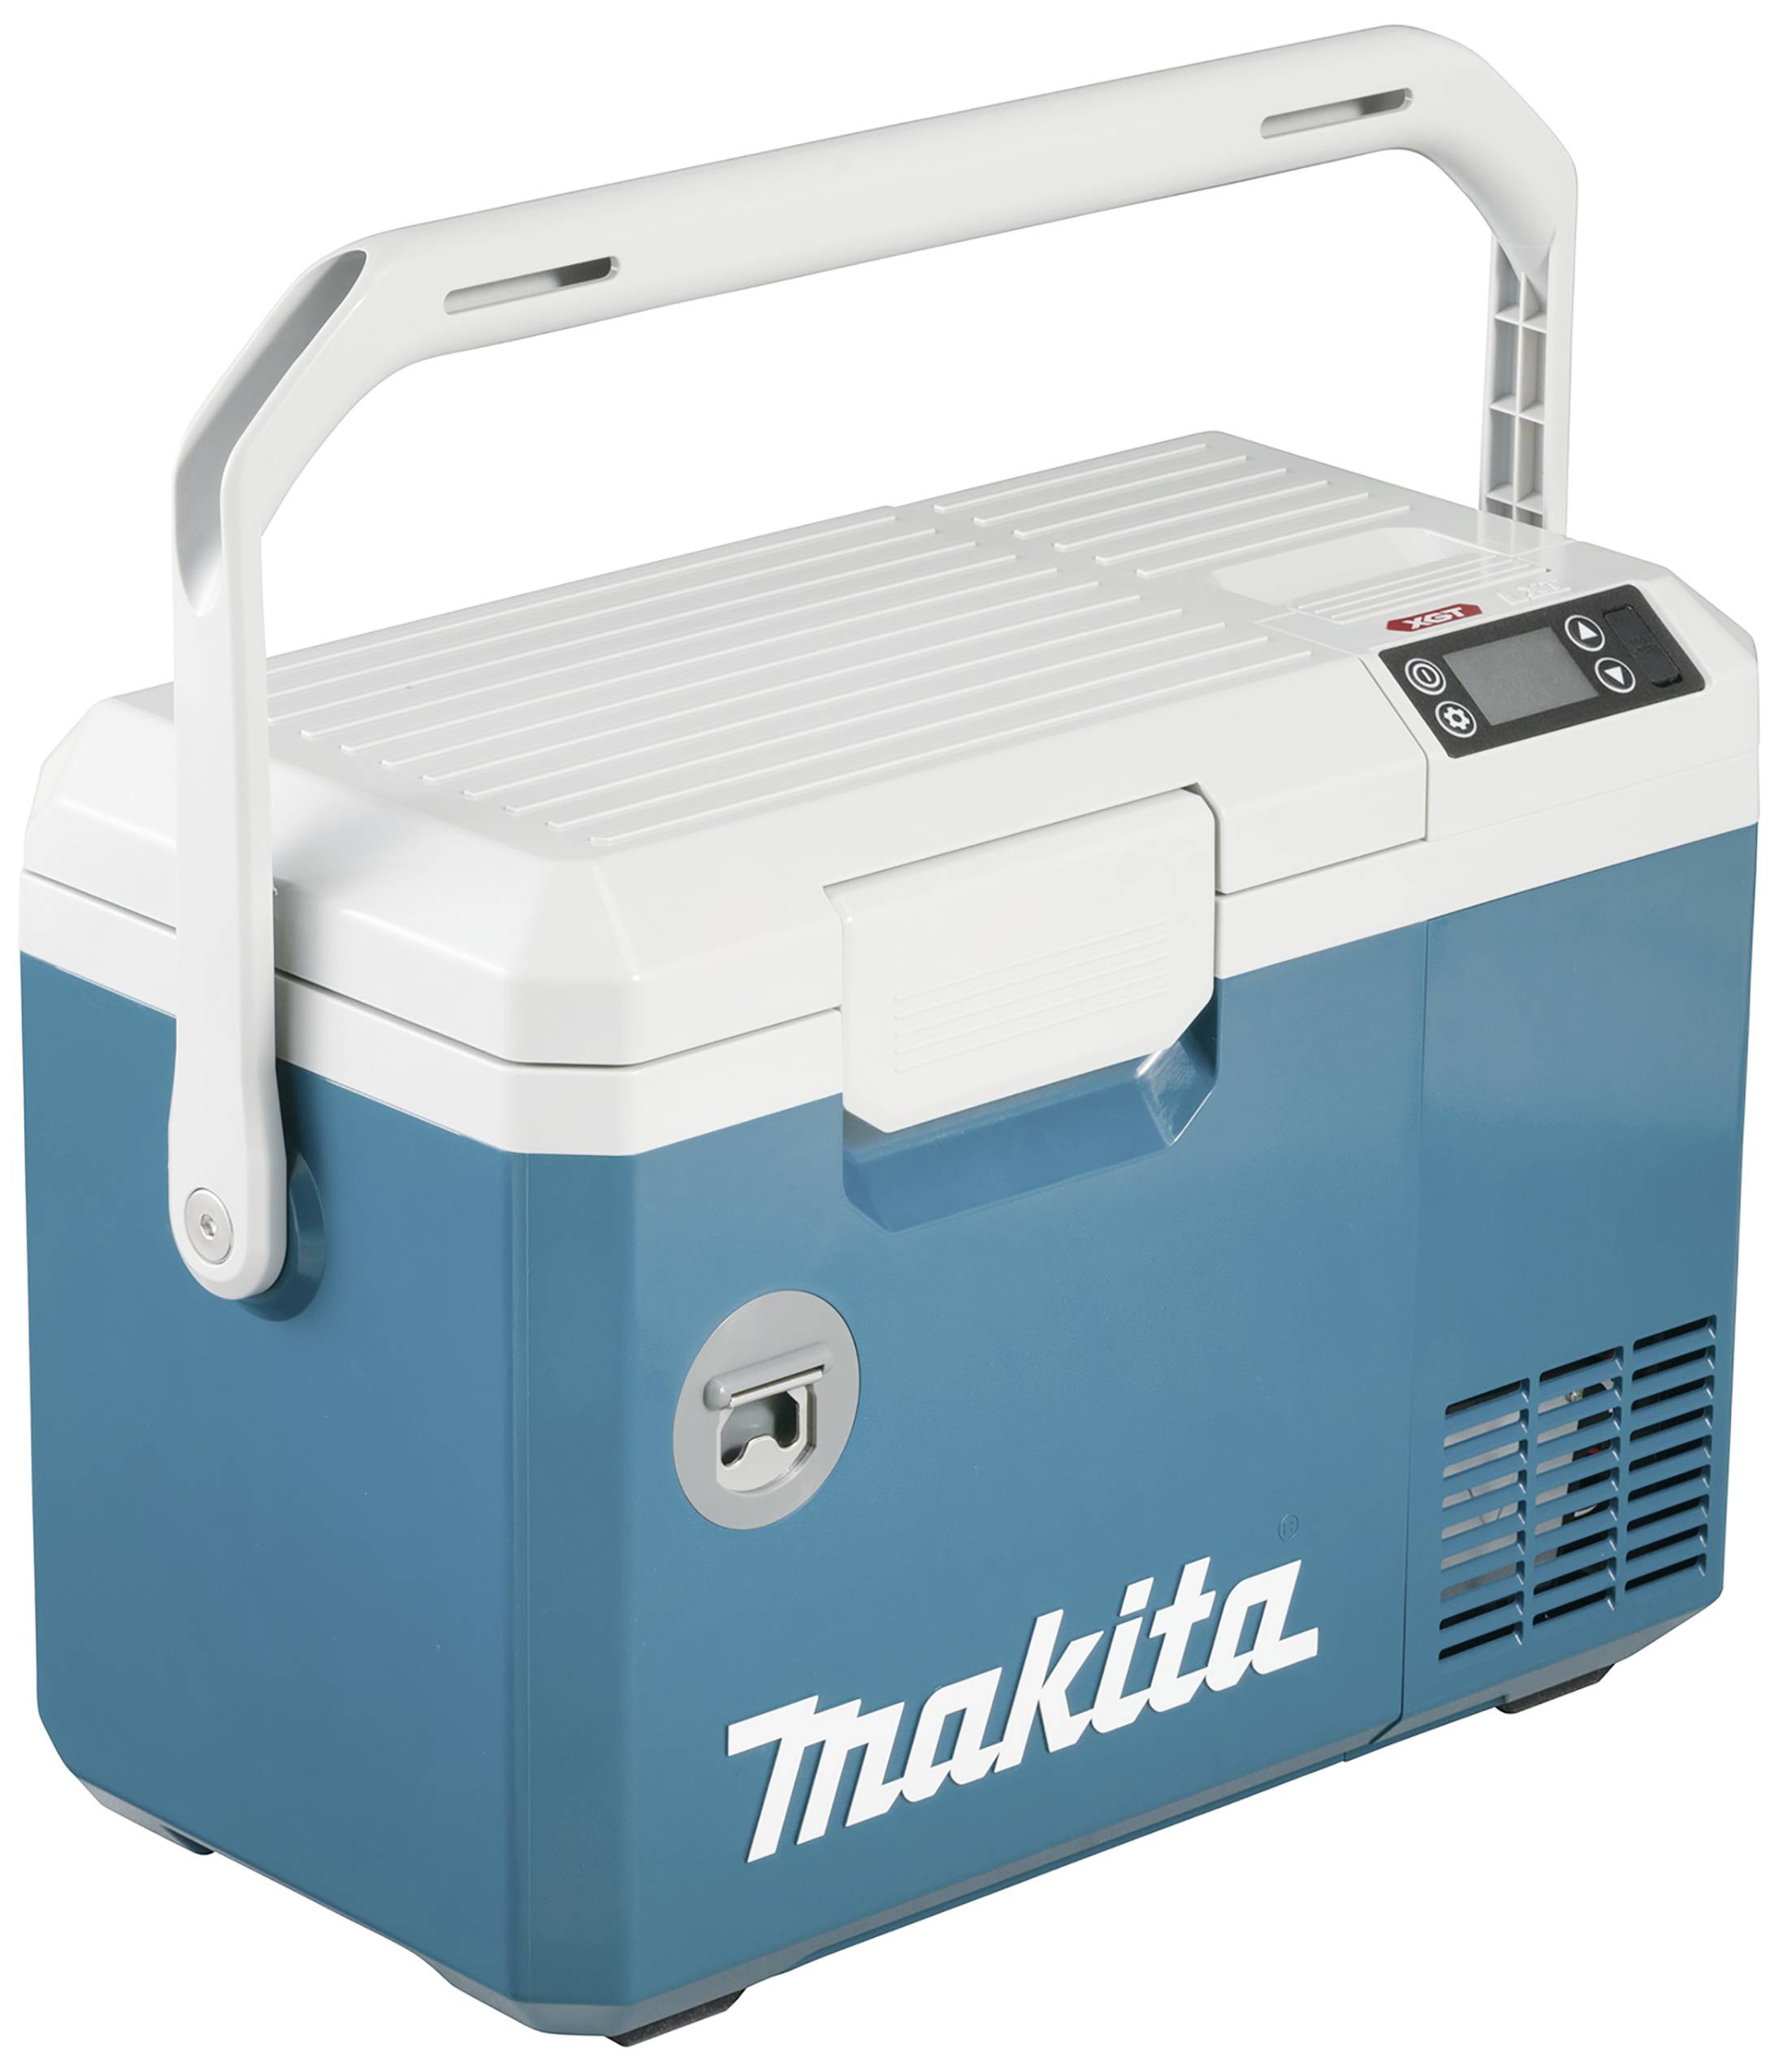 Makita CW003GZ01 Kühlbox & Heizbox 12 V/DC, 24 V/DC, 100 V/AC, 240 V/AC  Türkis, Weiß 7 l -18 °C kaufen